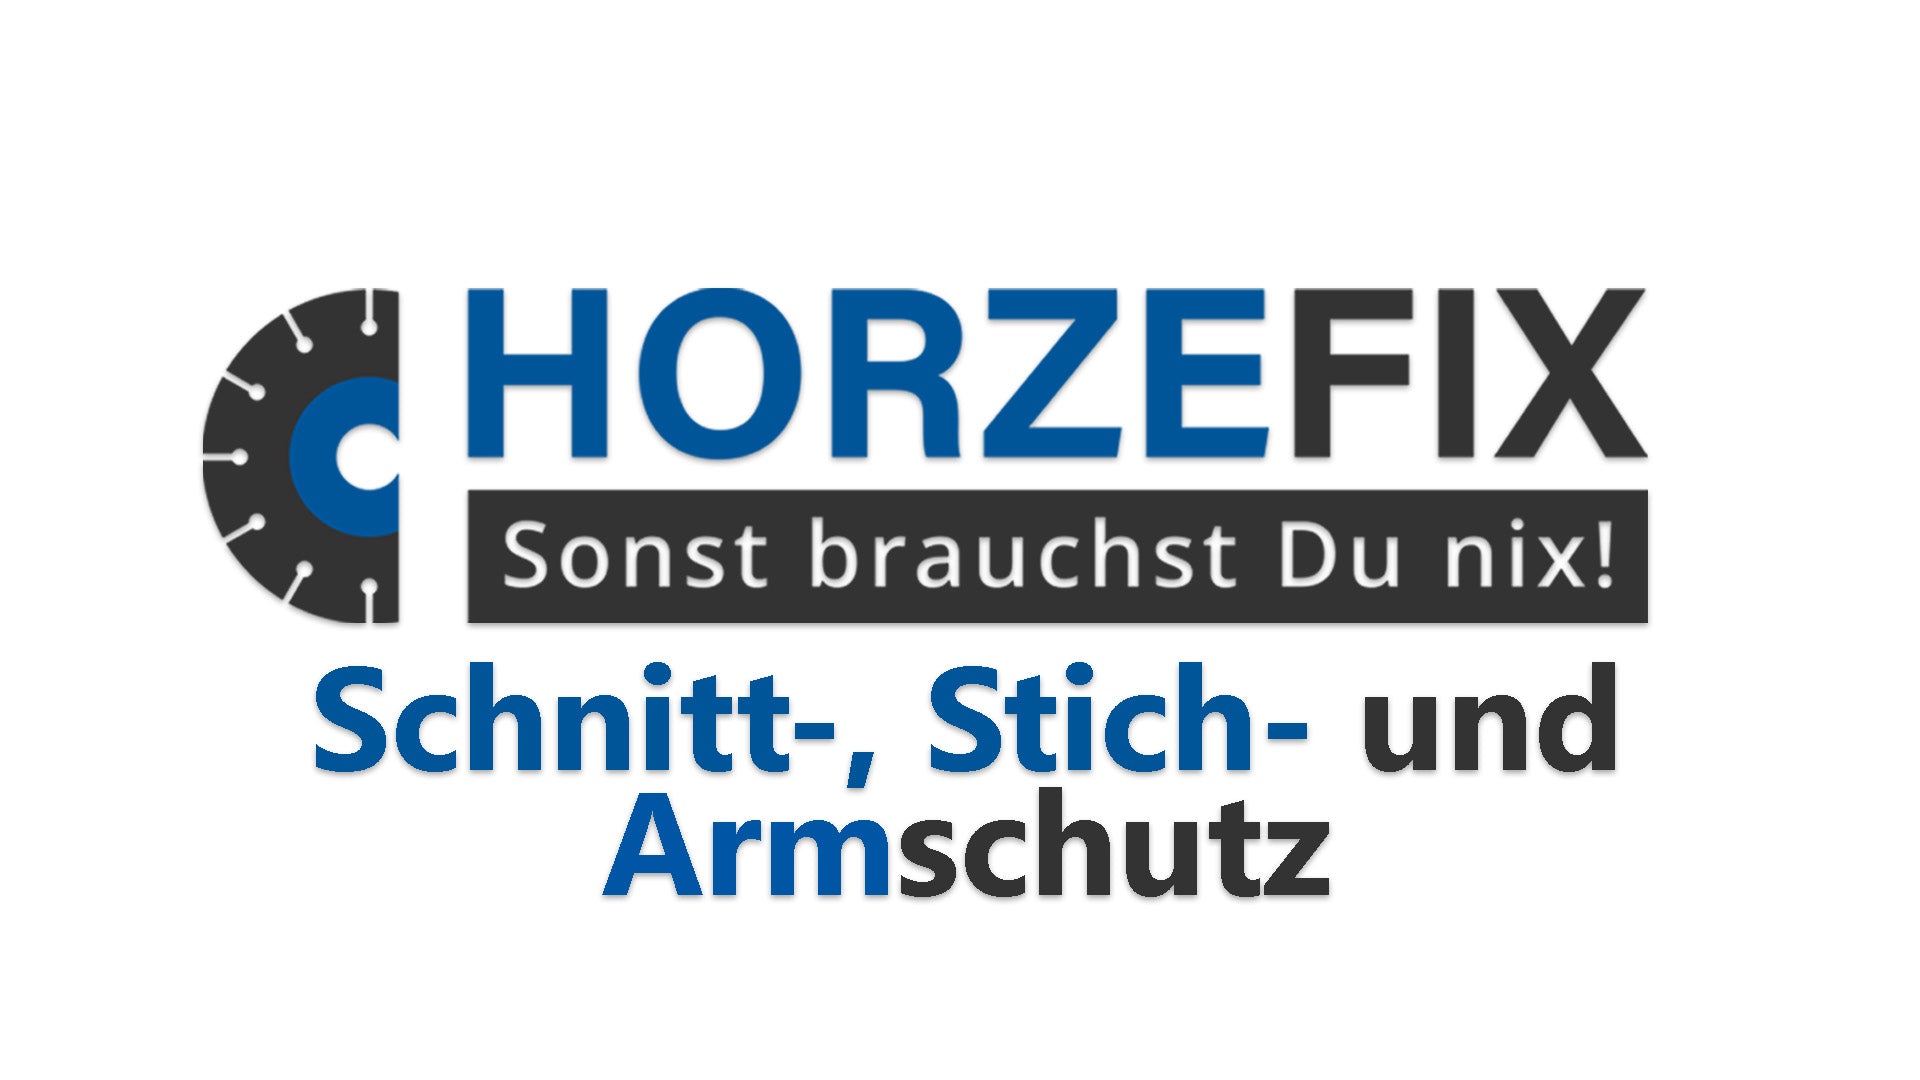 Schnitt- Stich- und Armschutz horzefix